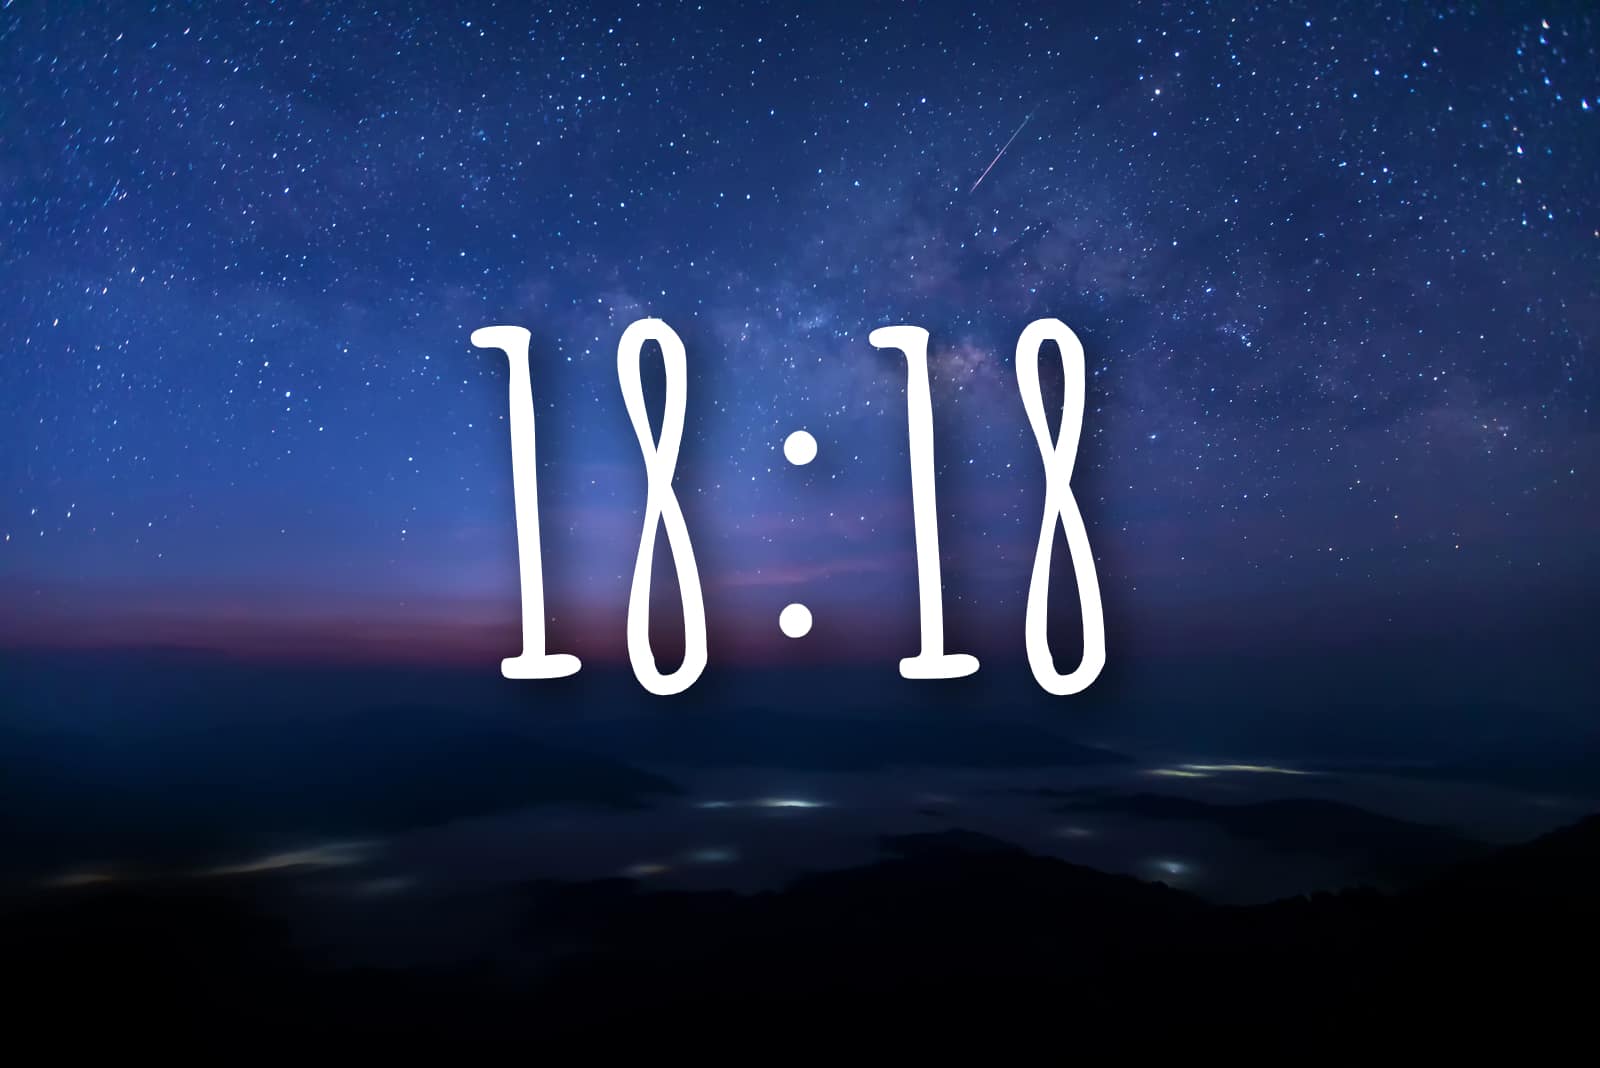 18:18 Uhr – wir enthüllen ihre himmlische Bedeutung!